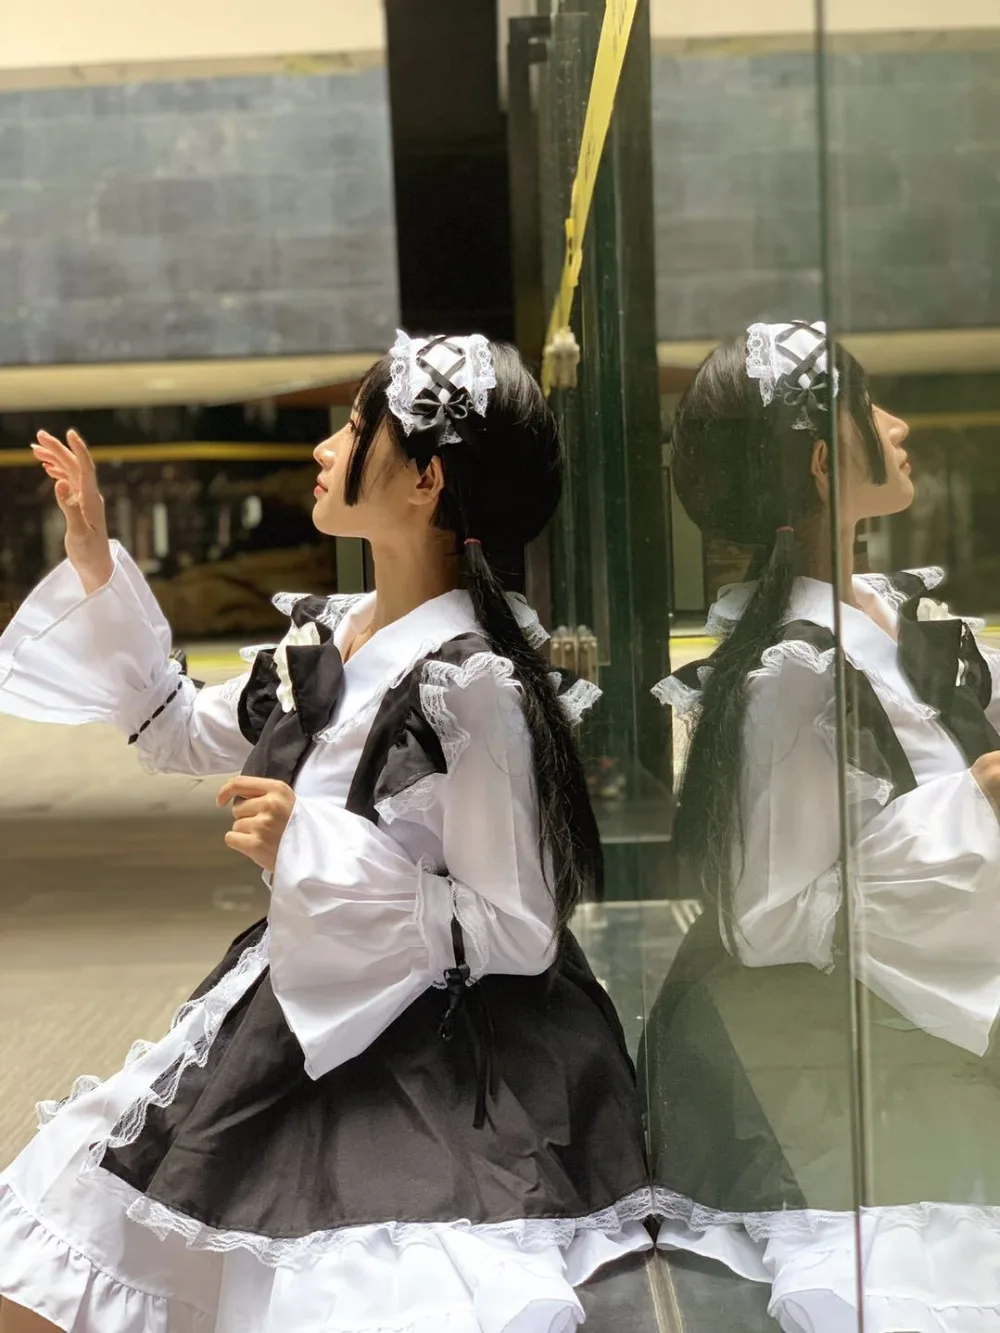 Черный и белый платье лолиты, в готическом стиле наряд горничной фартук платье аниме Косплэй костюм Для женщин длинные платья костюмы на Хэллоуин